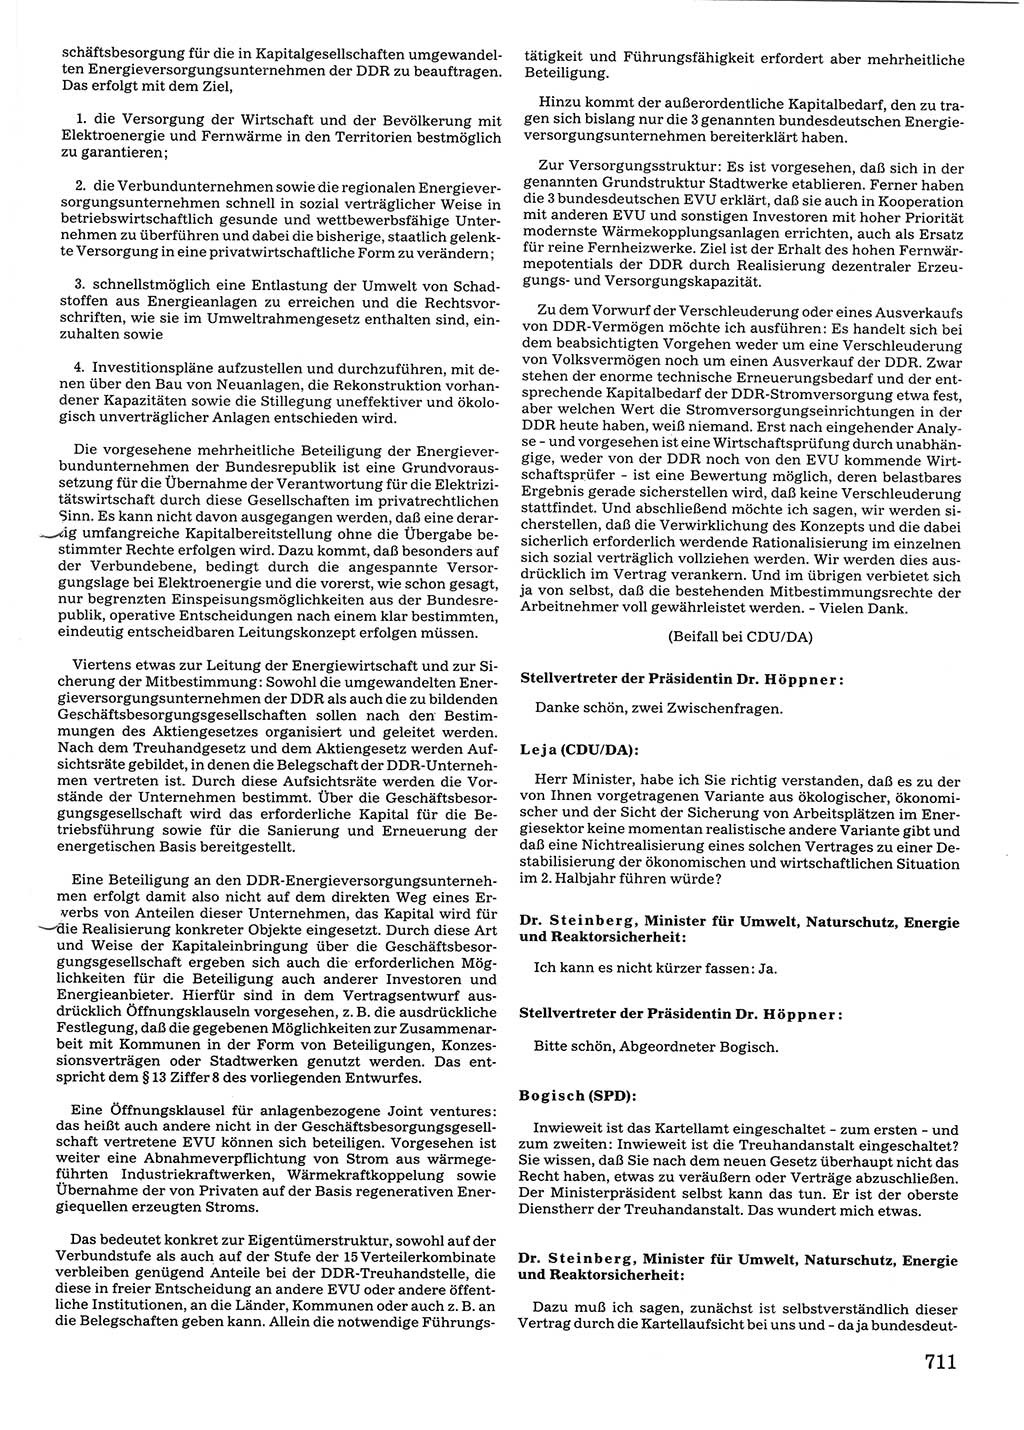 Tagungen der Volkskammer (VK) der Deutschen Demokratischen Republik (DDR), 10. Wahlperiode 1990, Seite 711 (VK. DDR 10. WP. 1990, Prot. Tg. 1-38, 5.4.-2.10.1990, S. 711)